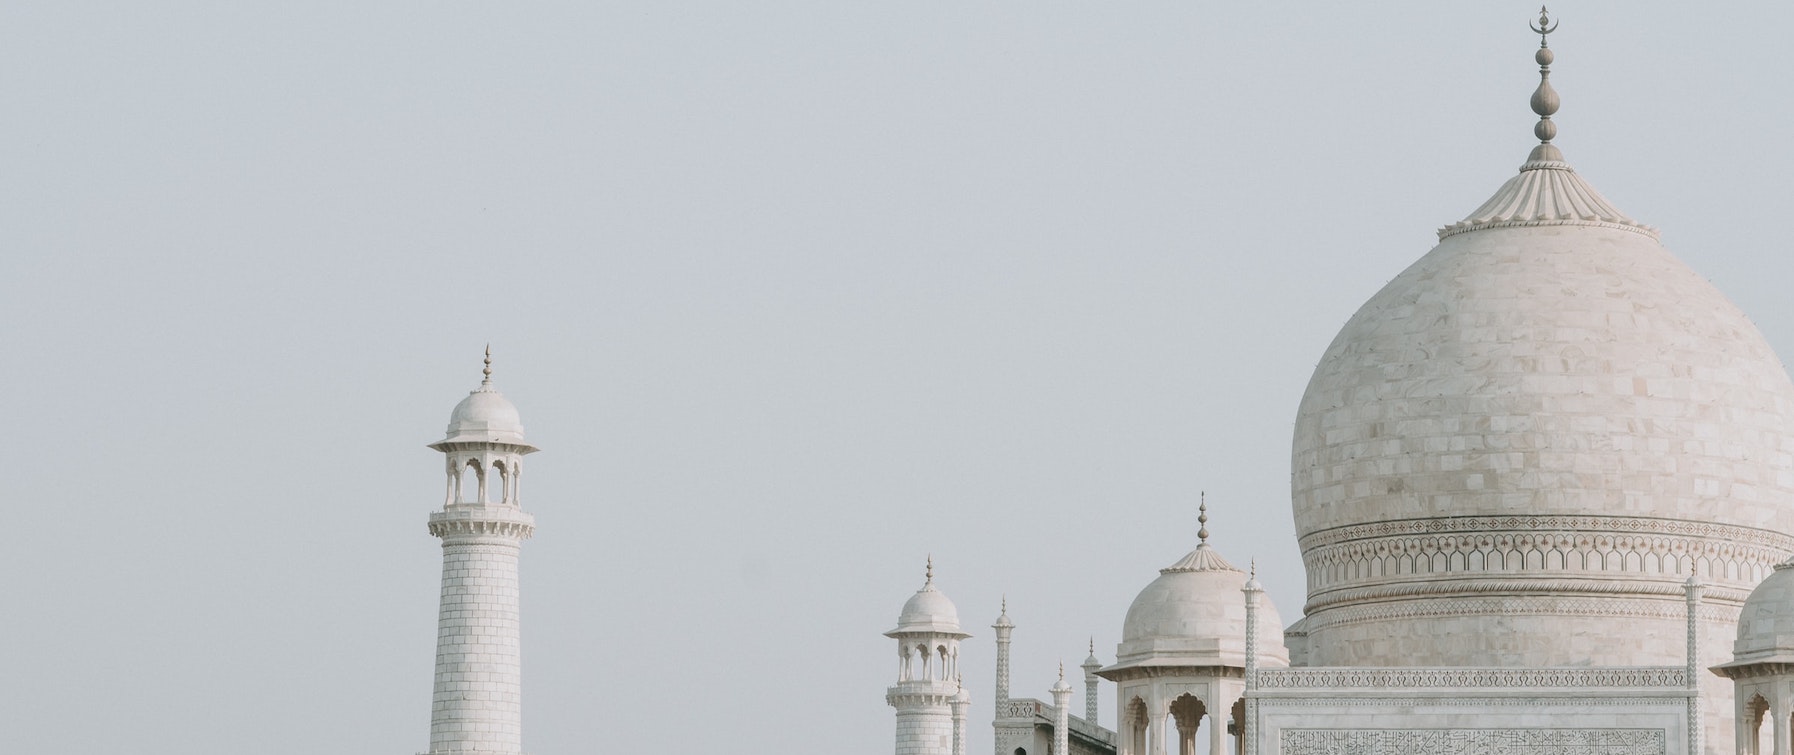 Taj Mahal buildings